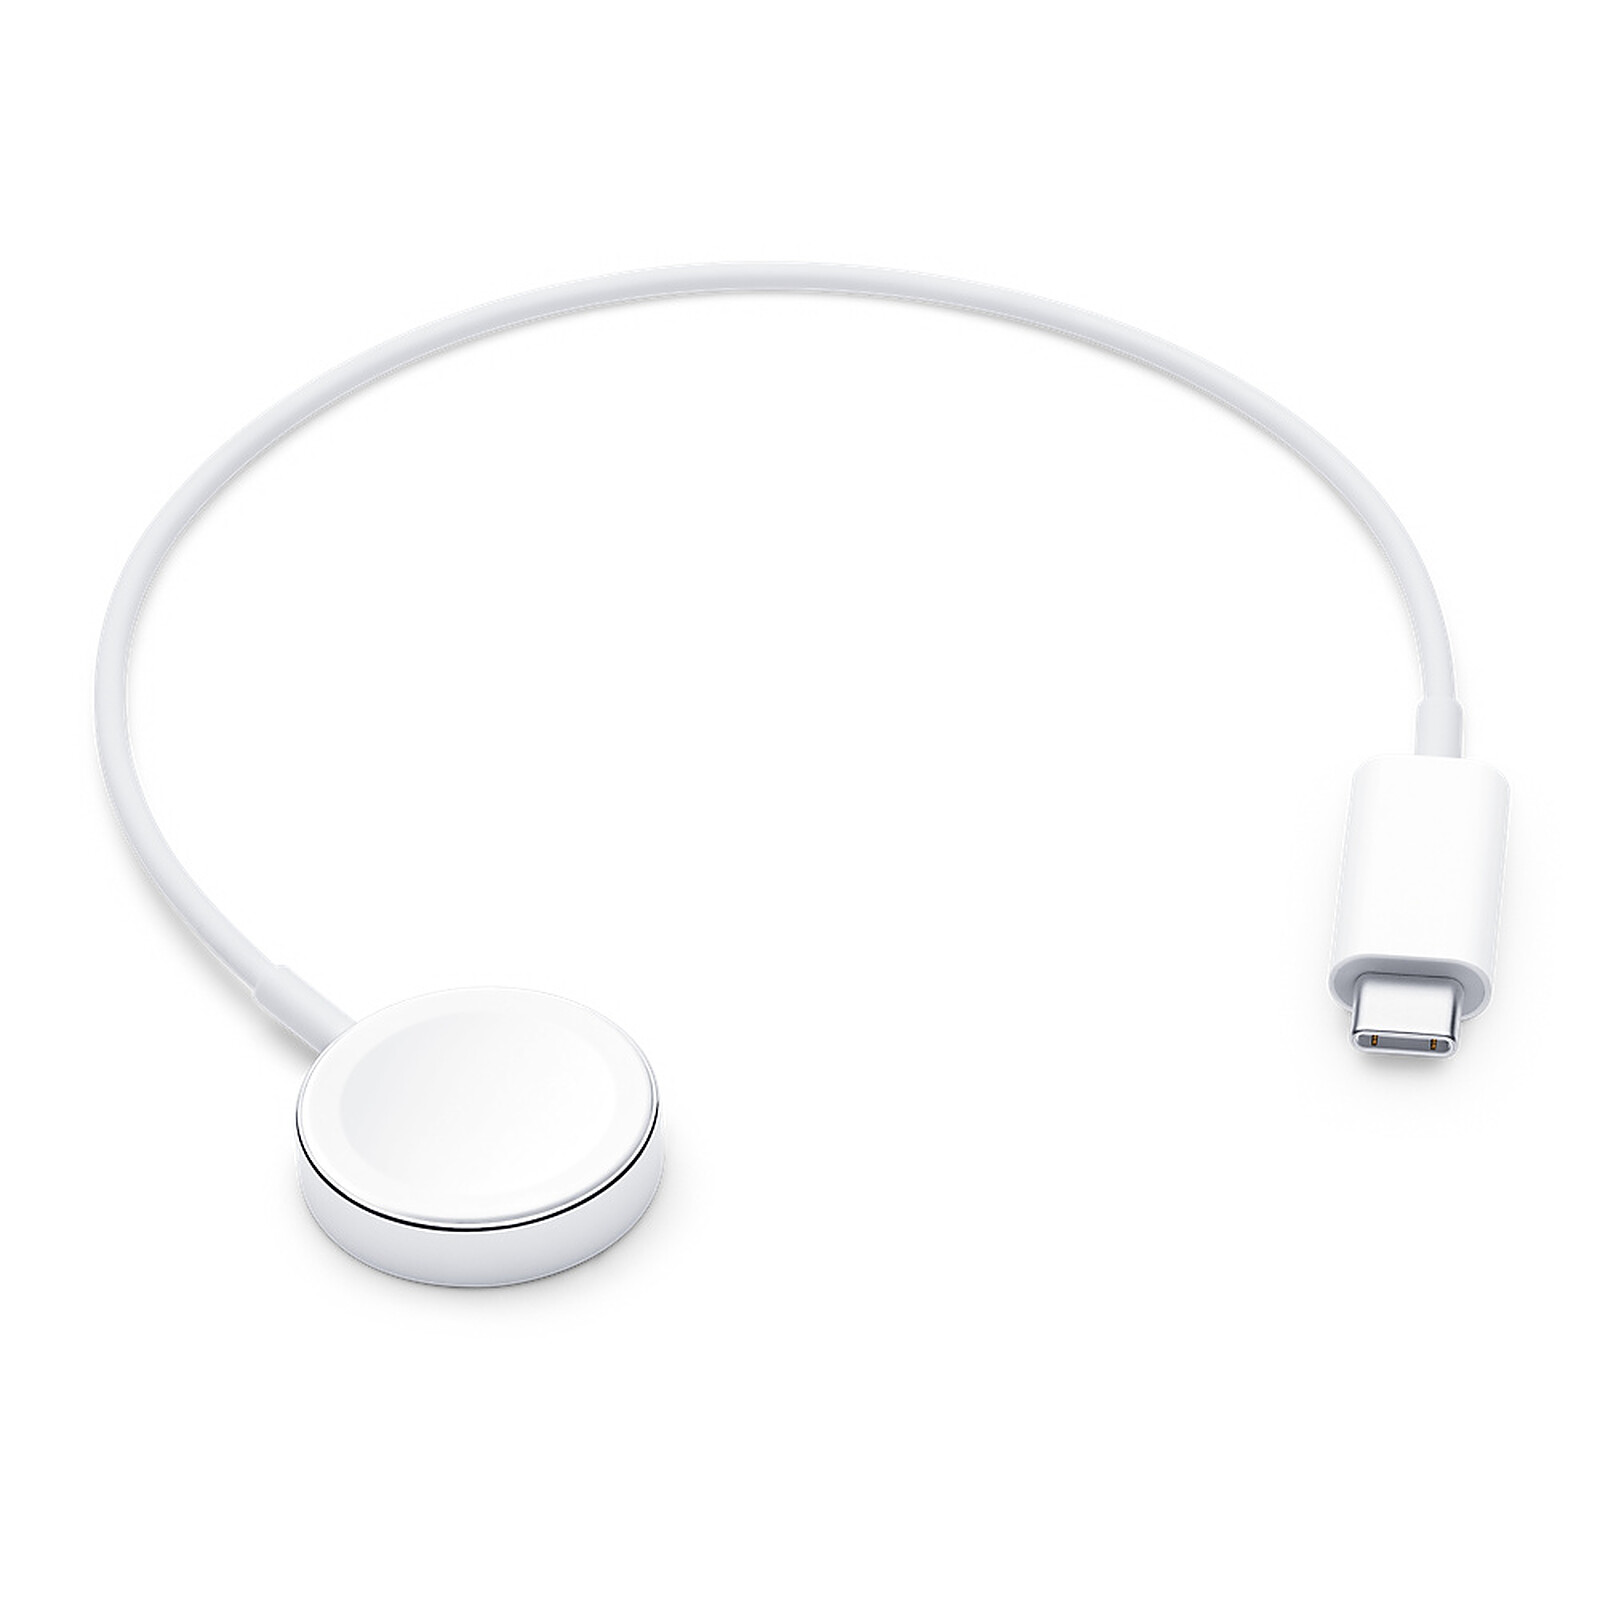 Apple Thunderbolt Cable 2 m - Accessoires Apple - Garantie 3 ans LDLC